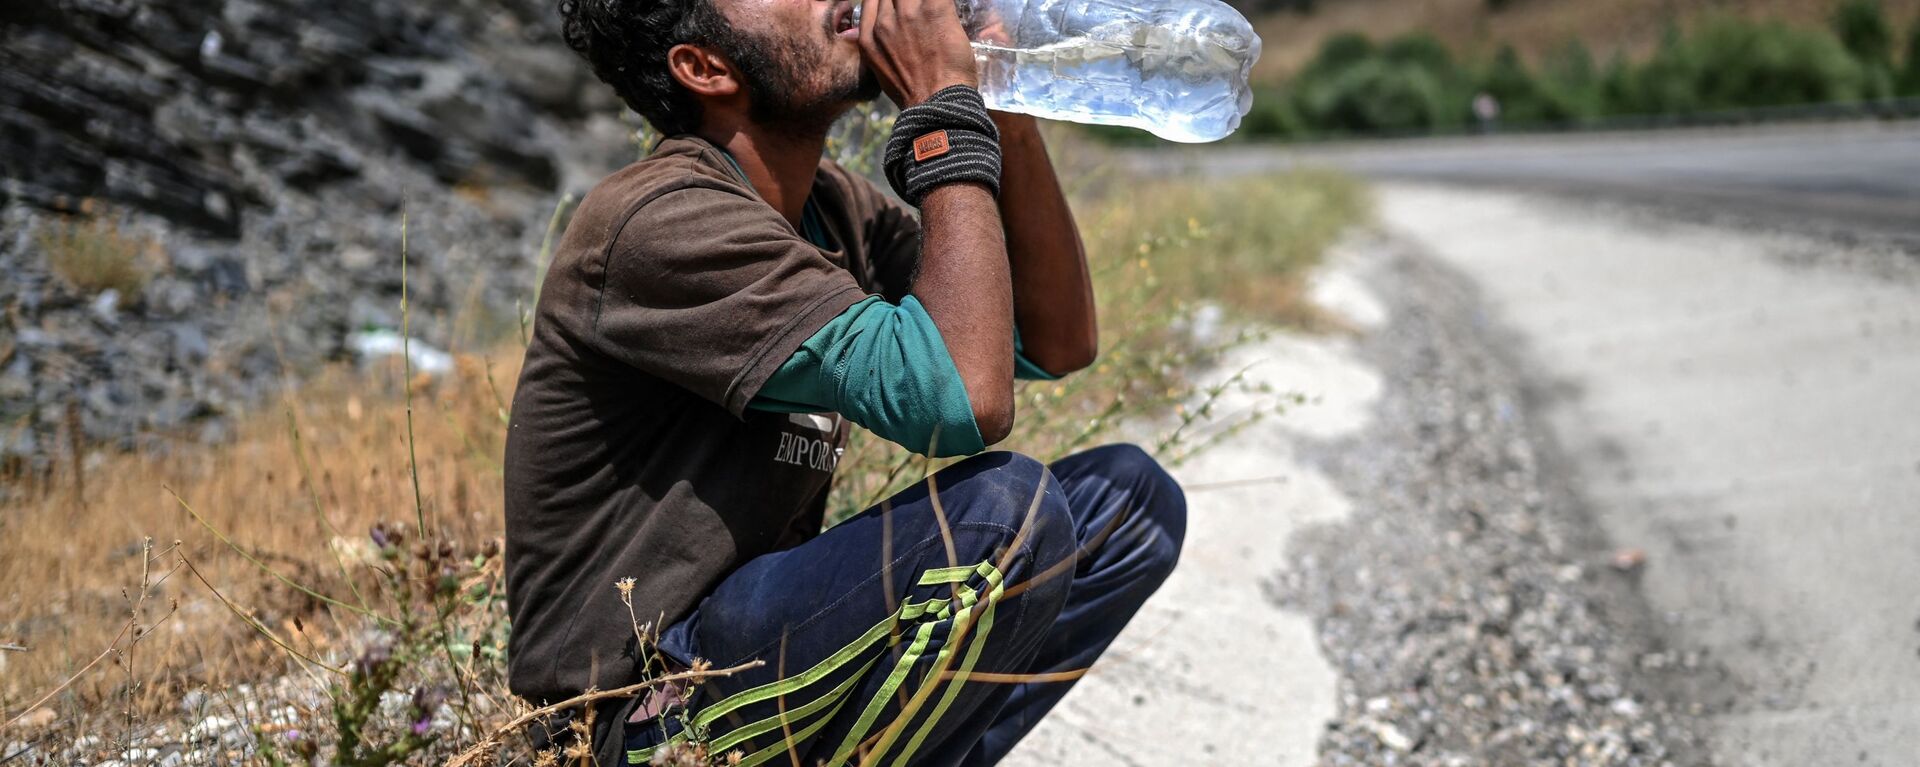 Афганский мигрант пьет воду в Татване - Sputnik Ўзбекистон, 1920, 16.09.2021